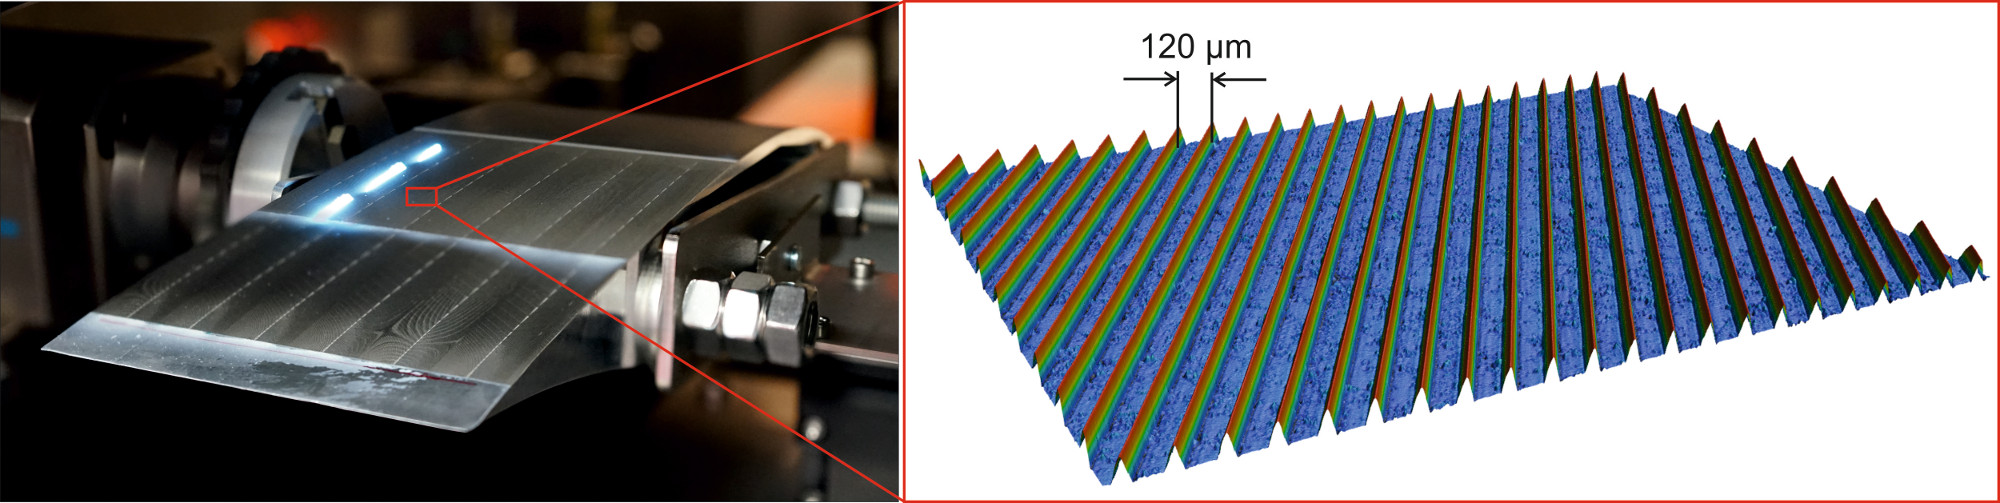 links: Laser prozessiert Riblets auf einem Flügelprofil aus Aluminium, rechts: Laserscanning-Mikroskopaufnahme (Ausschnitt 3 x 2 mm) einer mit Hilfe der Hochrate-Laserbearbeitung großflächig erzeugten Ribletstruktur (Ribletabstand 120µm, Riblettiefe 63µm)